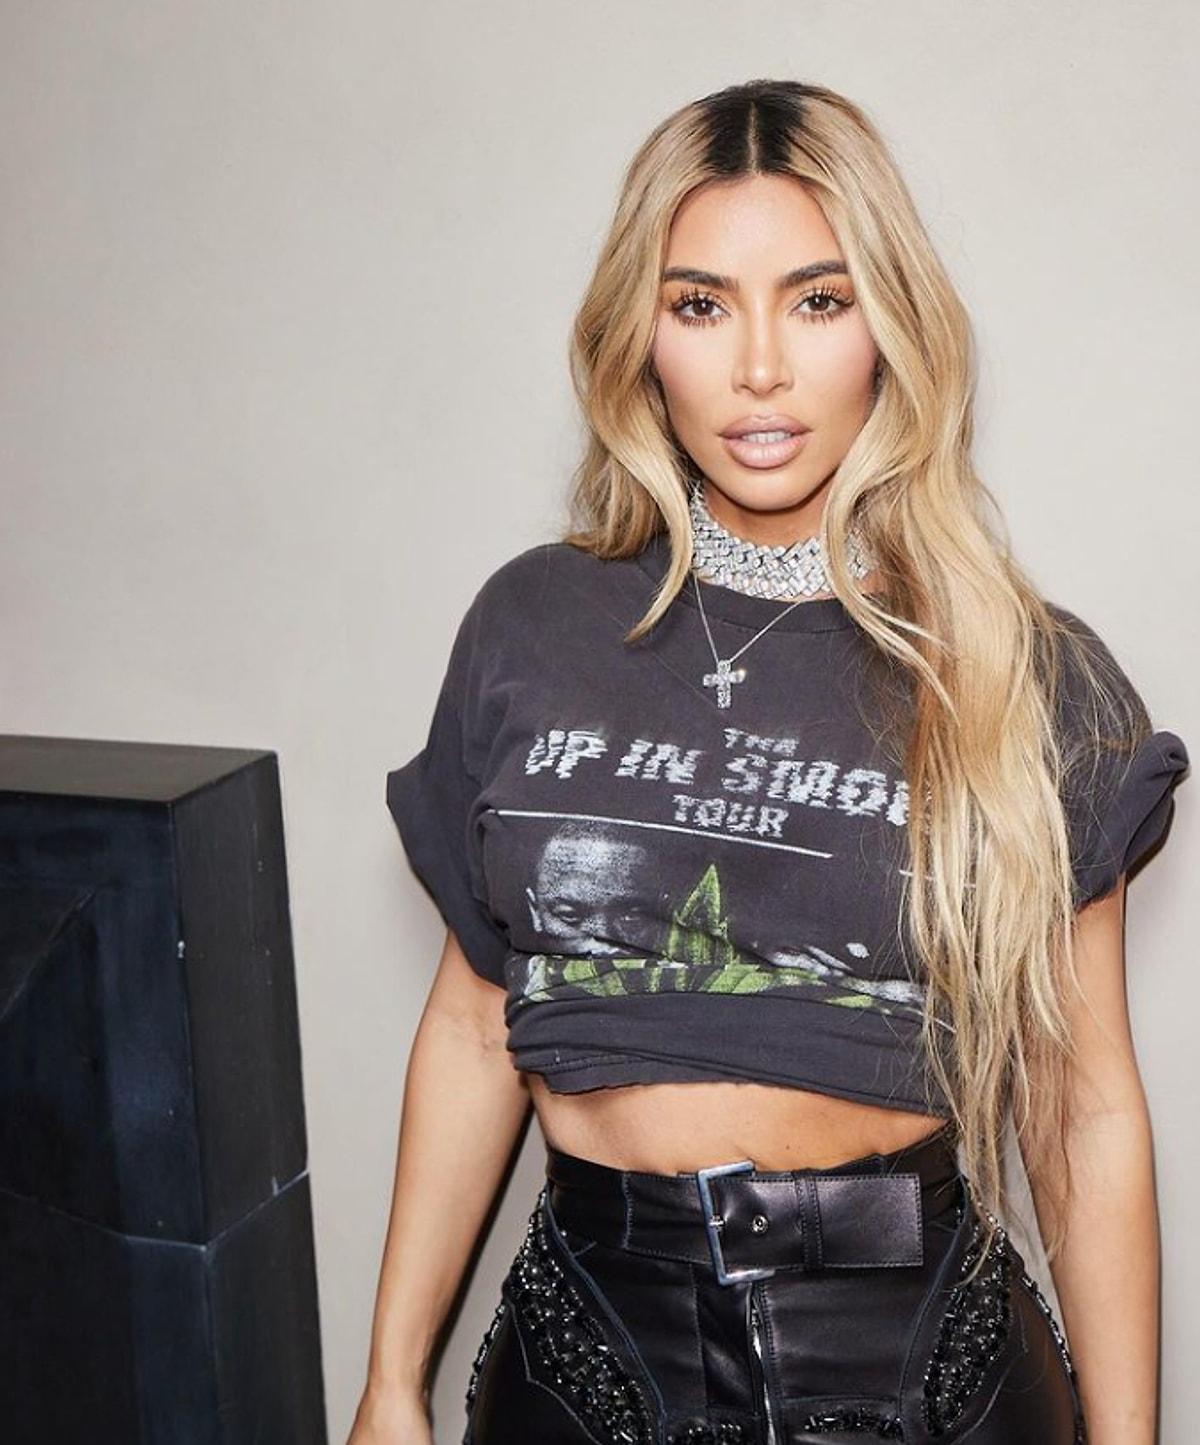 Ünlü internet ismi Kim Kardashian'ın şımarıklıklarını duymayan kalmamıştır. Geçtiğimiz günlerde Jimmy Kimmel şova katılan Kardashian takıntılarına yeni bir boyut getirdi, asistanının her sabahki görevini anlatan Kardashian'a duyanlar inanamadı!